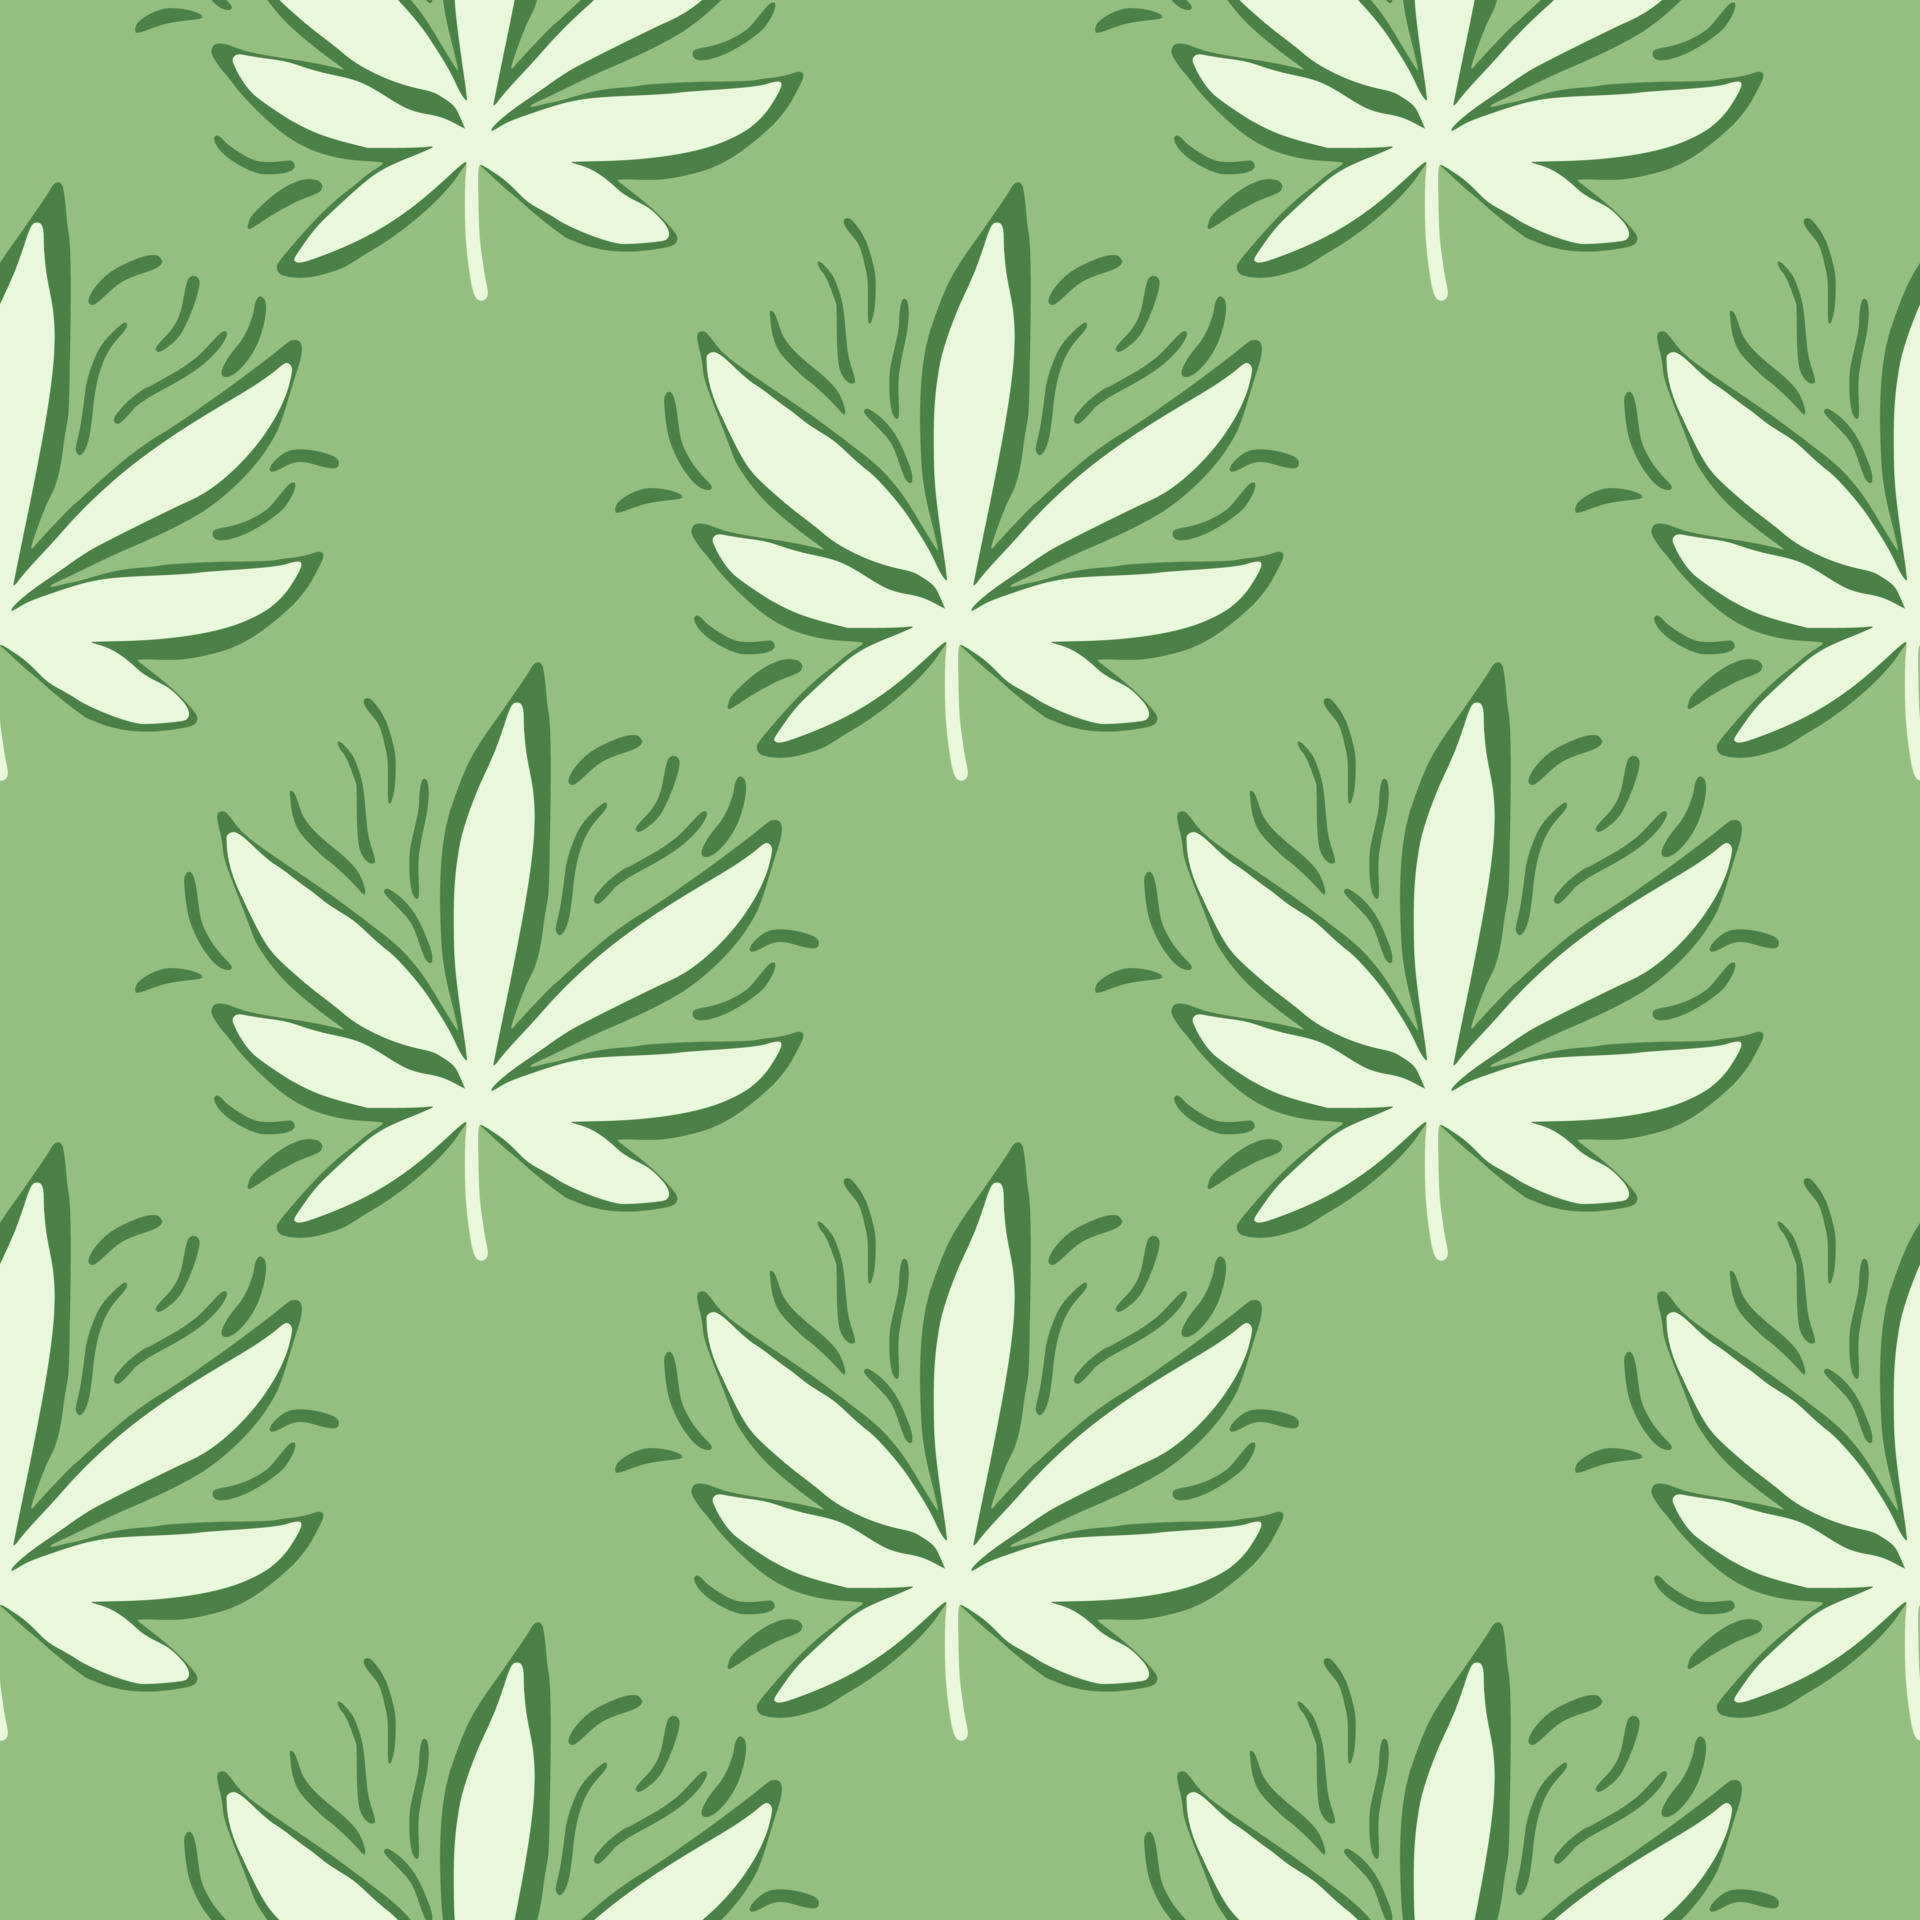 Taen Högre Resa Med Denna Tecknade Cannabisblomma Som Bakgrundsbild På Datorn Eller Mobilen. Wallpaper